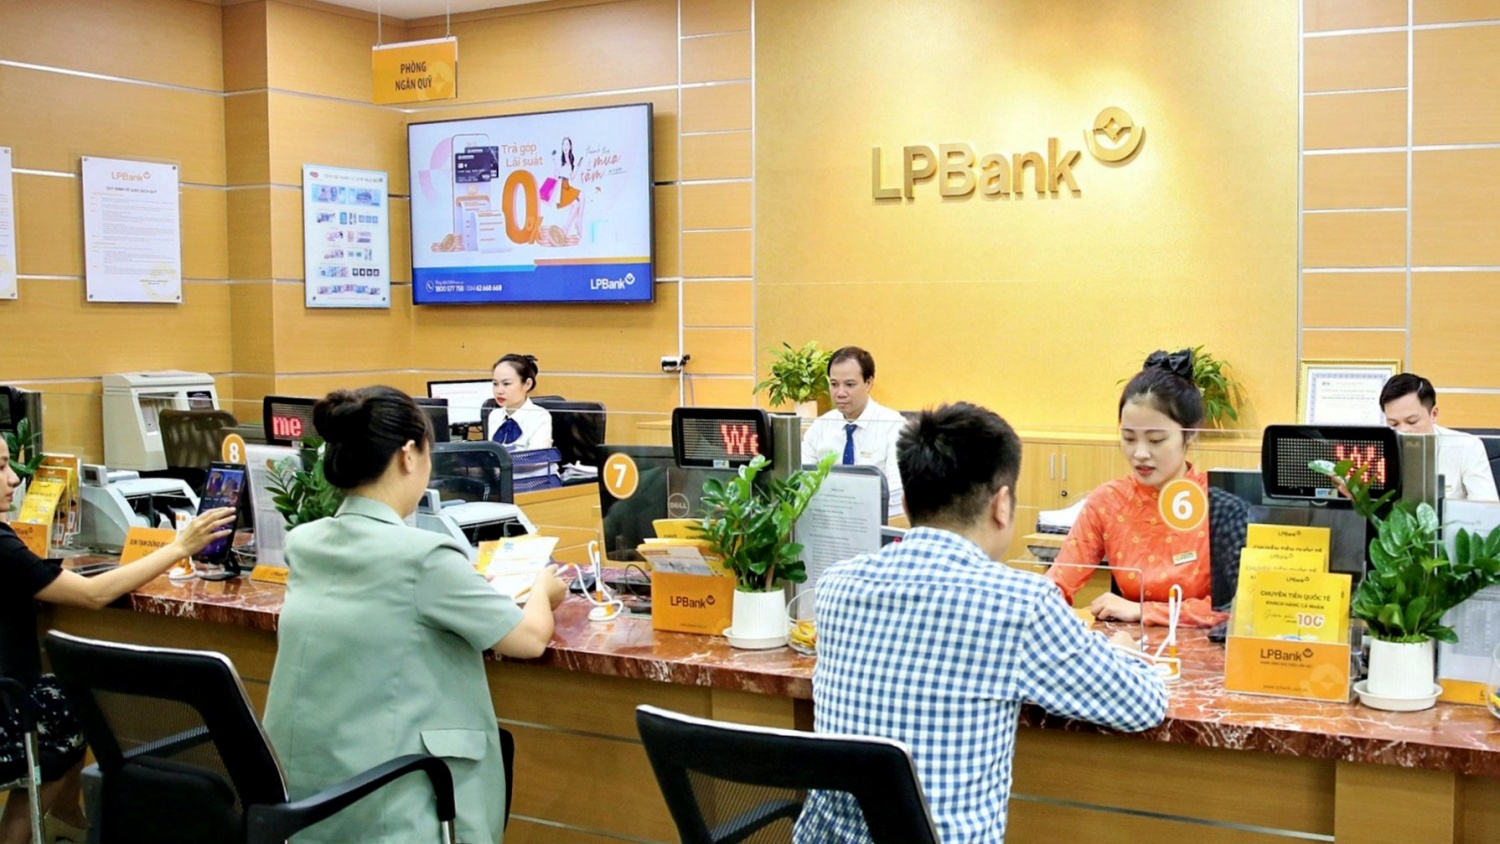 Tin ngân hàng ngày 18/5: LPBank được tăng vốn điều lệ lên 33.576 tỷ đồng